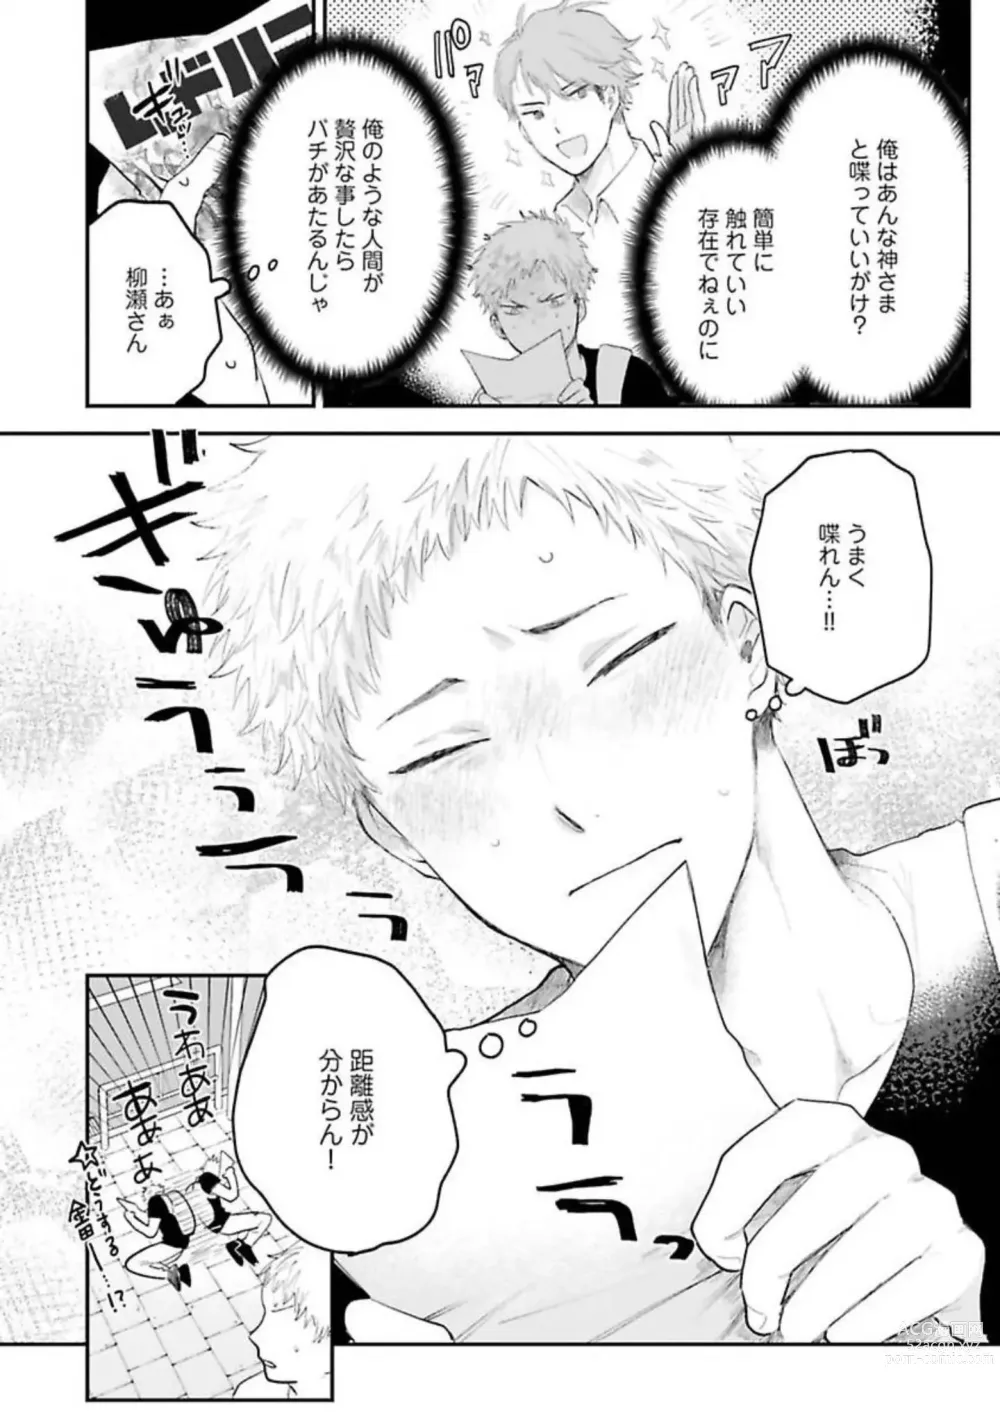 Page 24 of manga Senpai, Danjite Koi de wa!